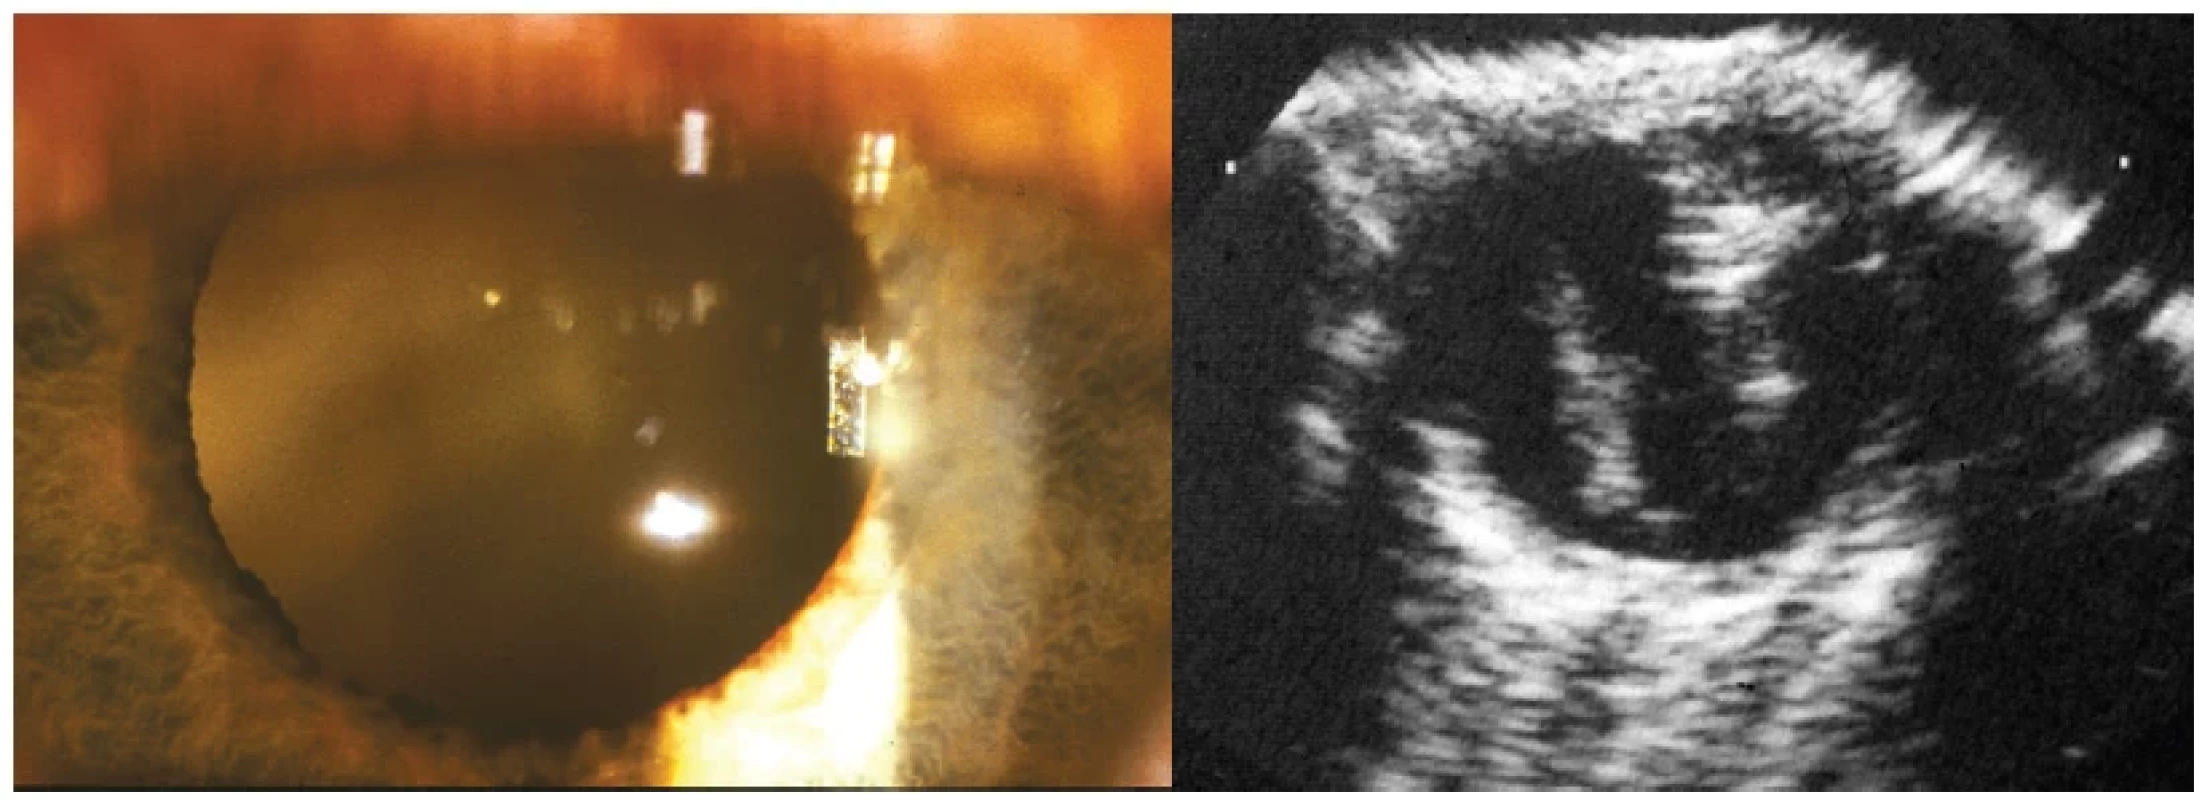 Vlevo: Zkalení sklivce toxokarové etiologie patrné retrolentálně
Vpravo: Ultrazvukový obraz toxokarové endoftalmitidy se zánětlivými konglomeráty sklivce a trakčním pruhem jdoucí od papily
do periferie sítnice